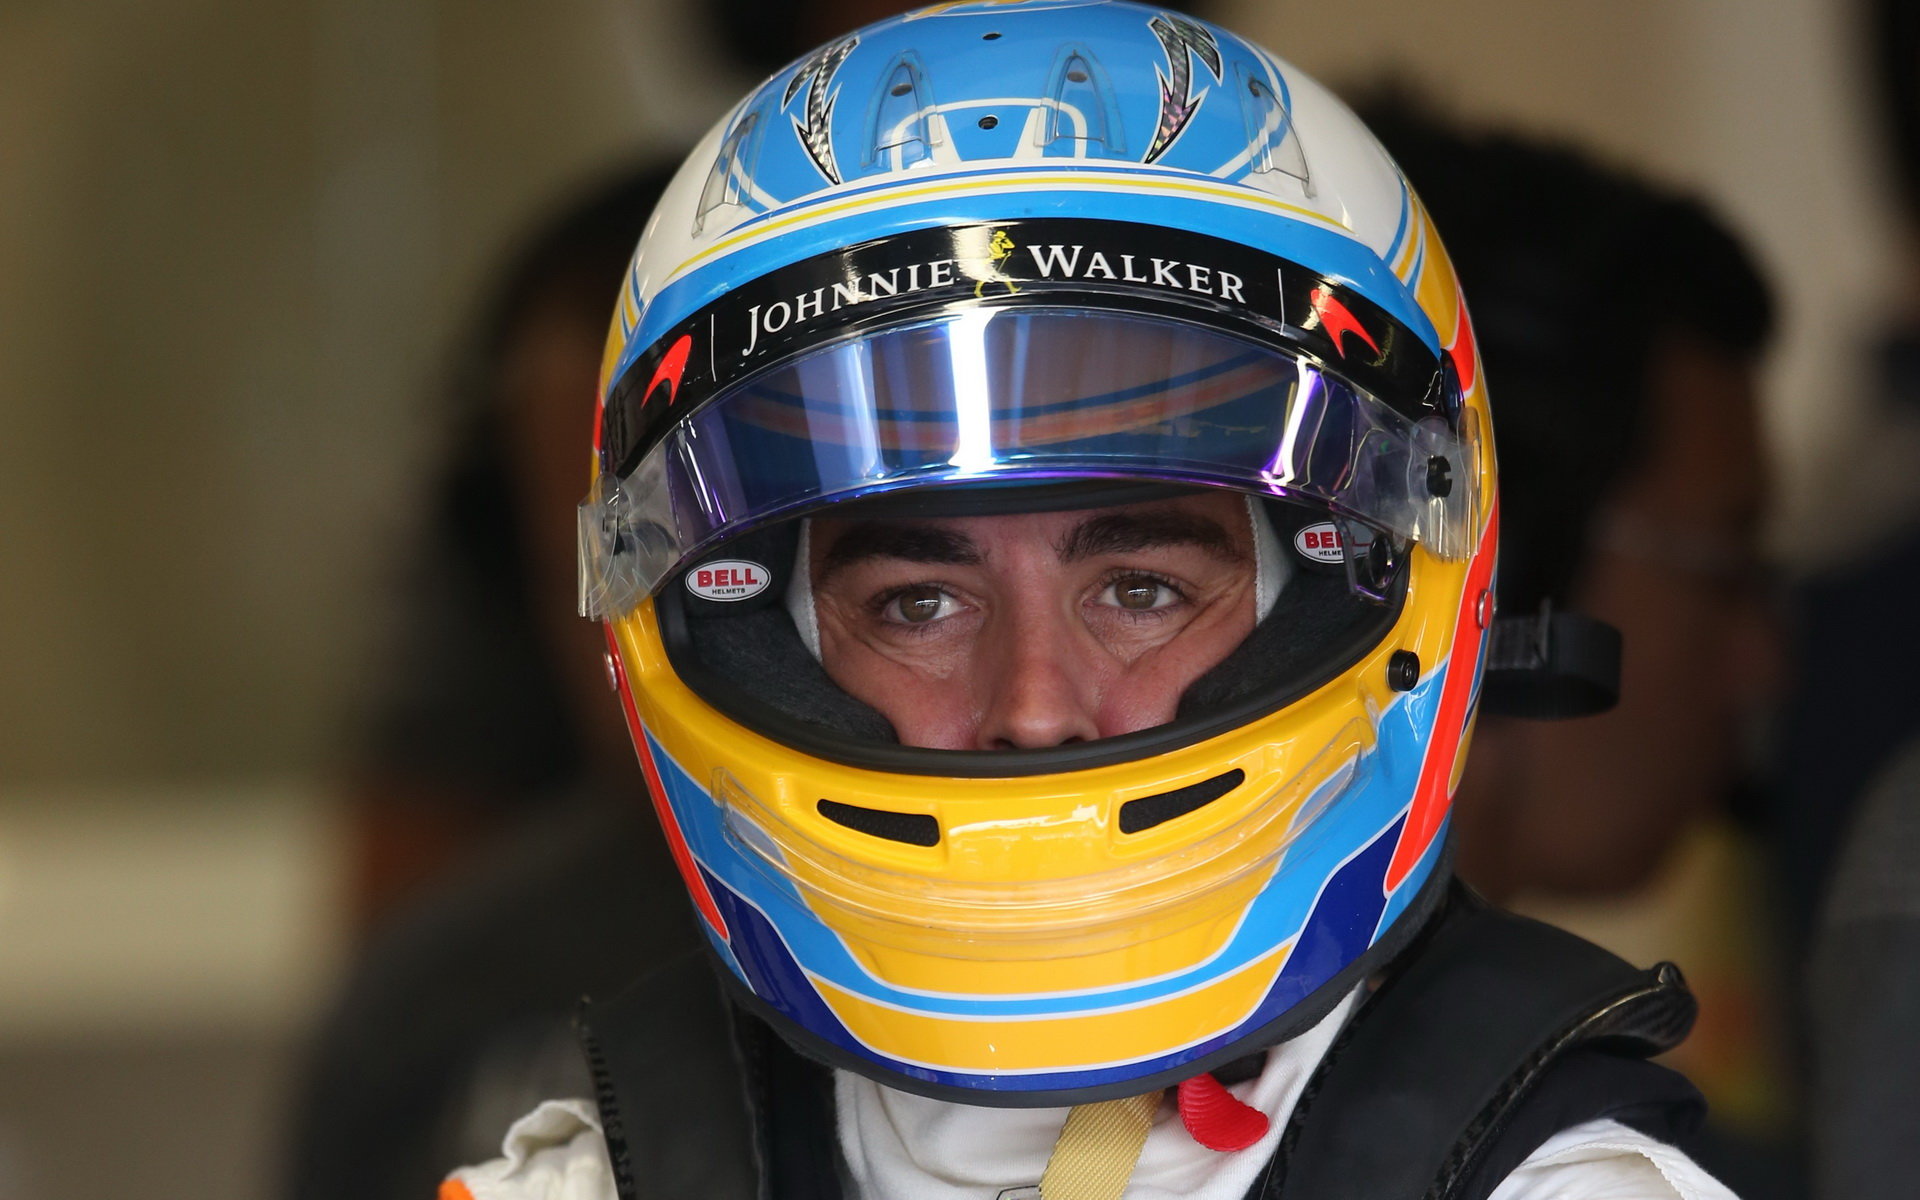 Fernando Alonso za deštivé kvalifikace v Itálii